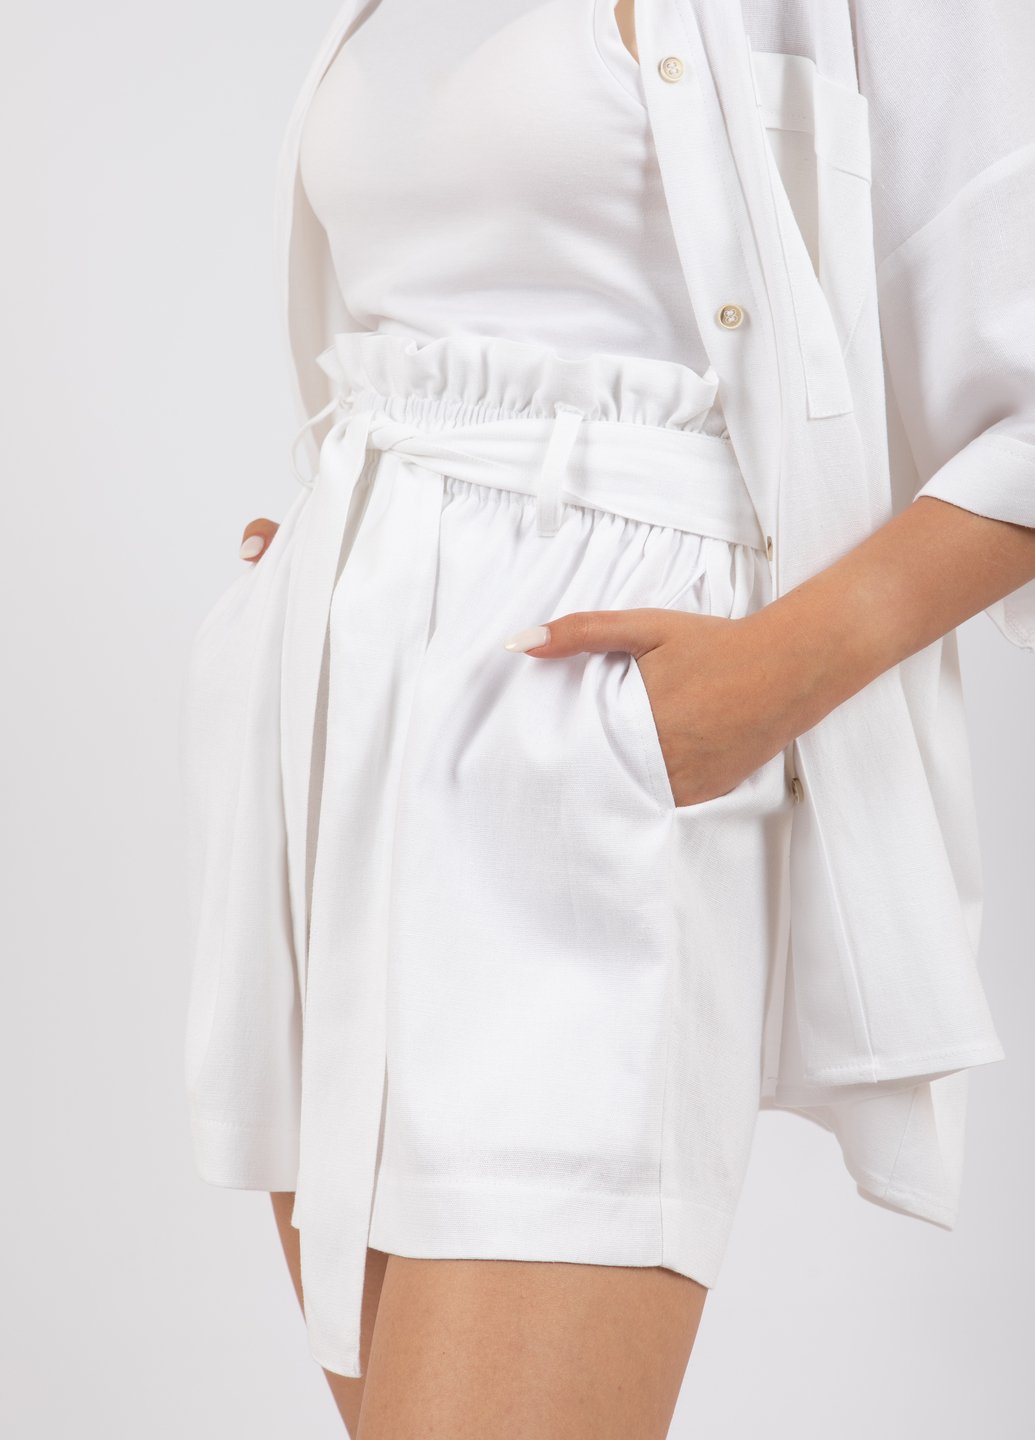 Купить Льняные шорты женские Merlini Тулуза 300000007 - Белый, 42-44 в интернет-магазине